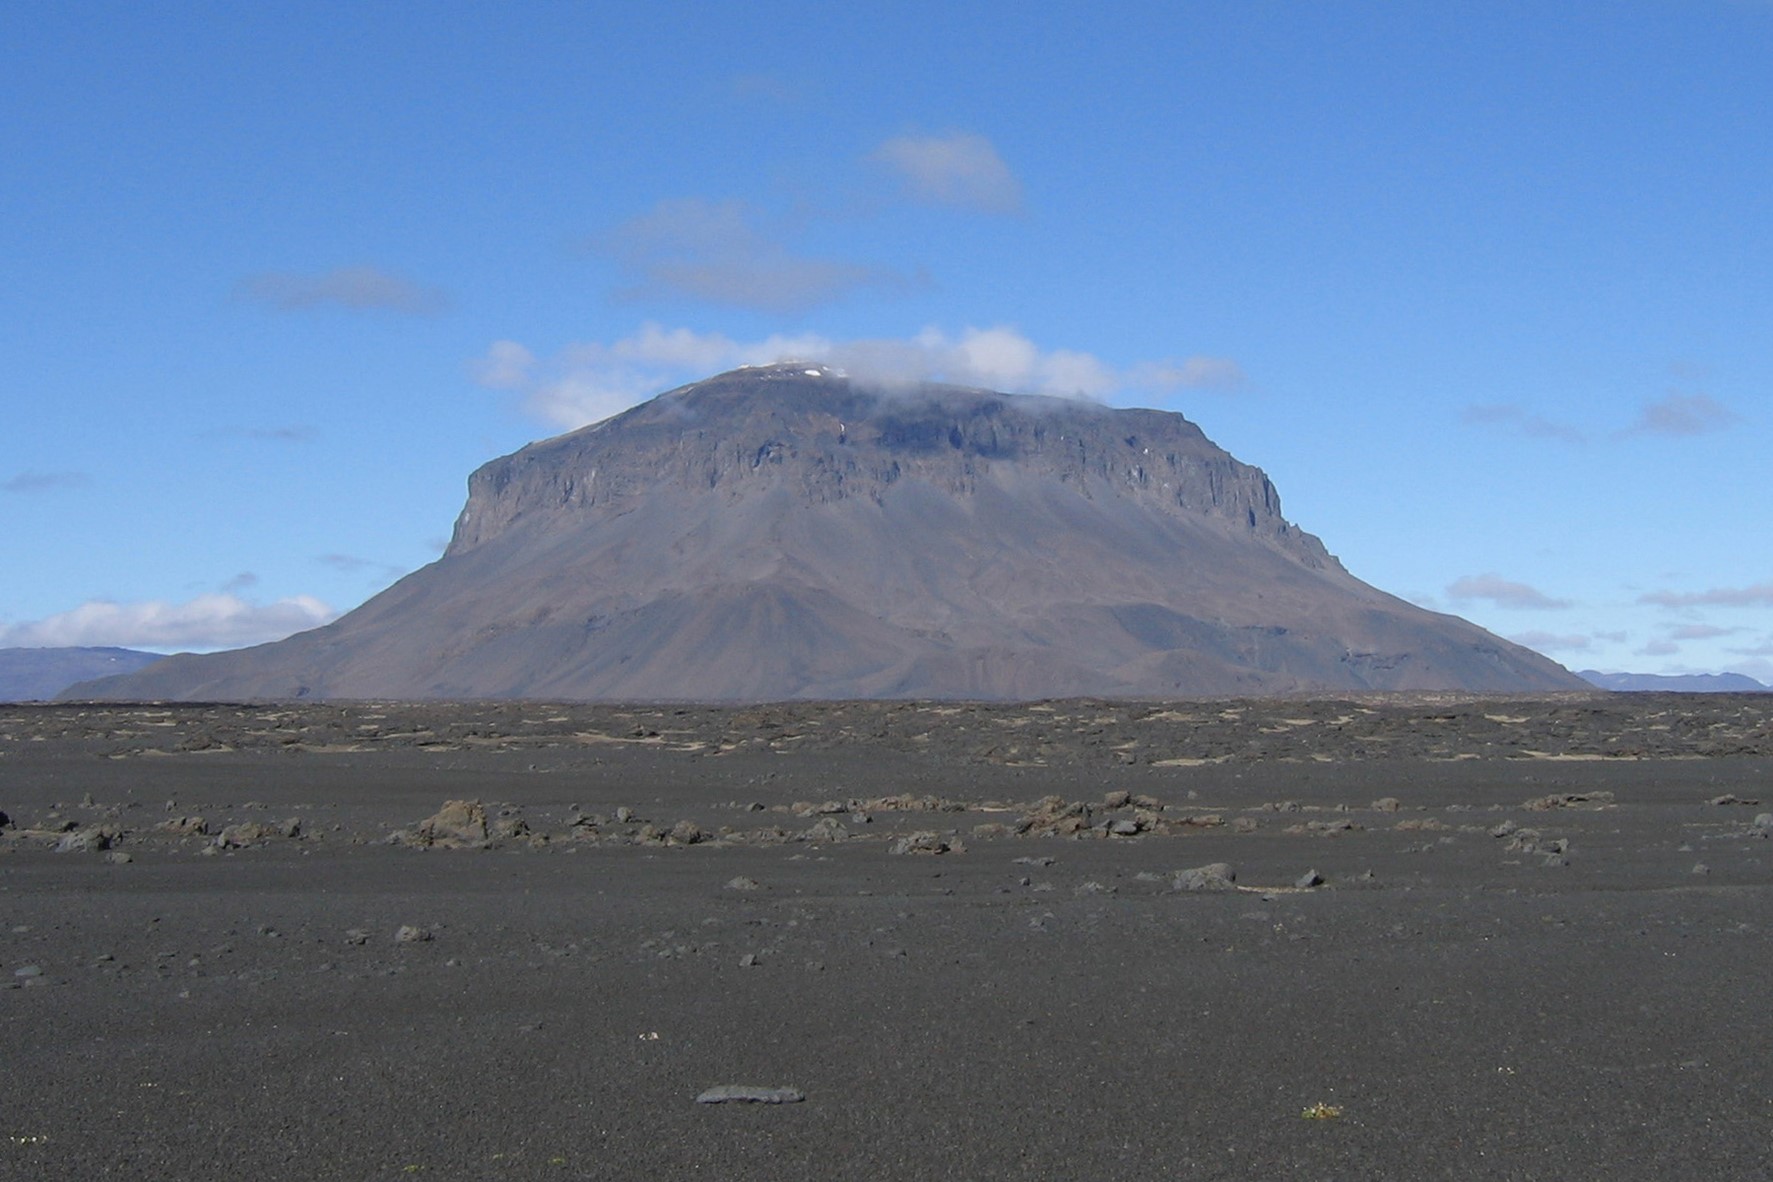 The mountain Herðubreið